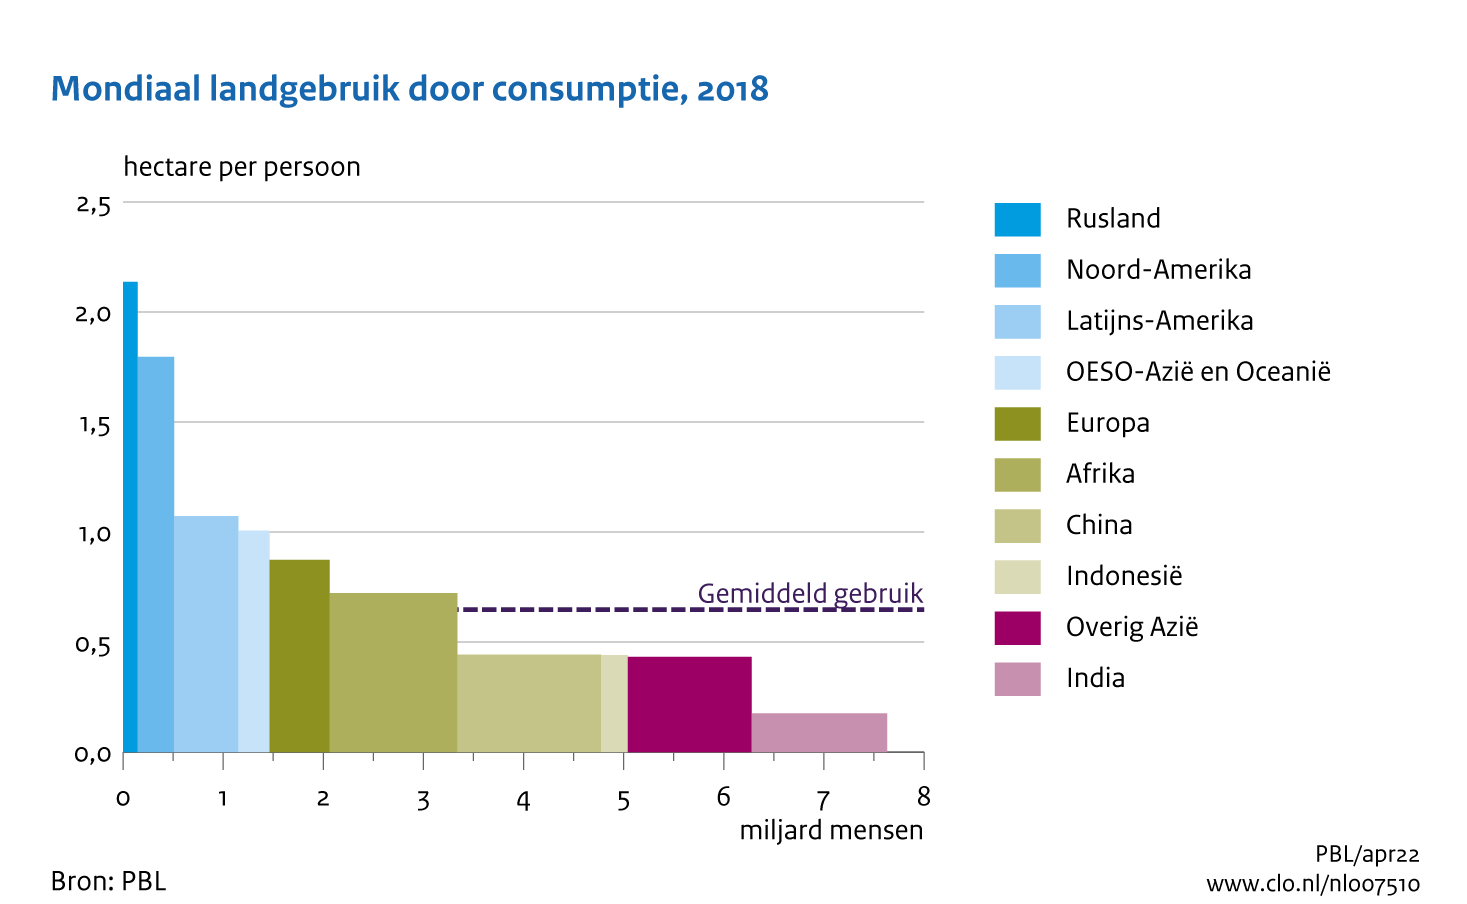 Figuur  Mondiaal landgebruik door consumptie naar wereldregio, 2018. In de rest van de tekst wordt deze figuur uitgebreider uitgelegd.